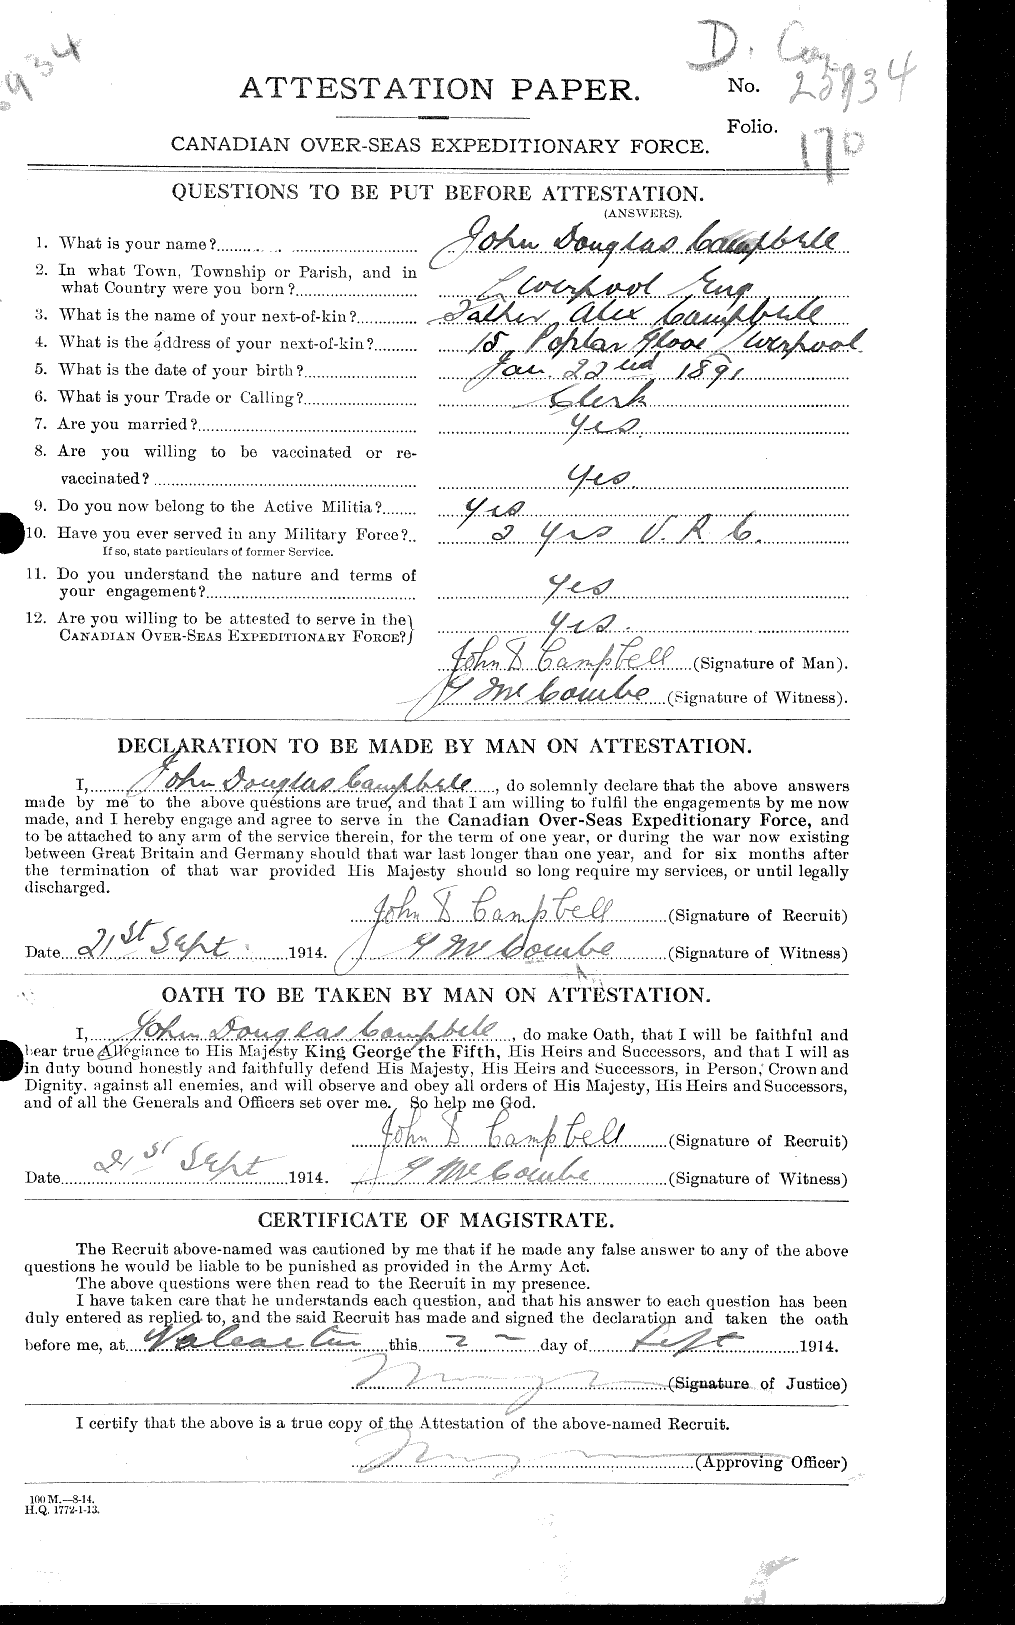 Dossiers du Personnel de la Première Guerre mondiale - CEC 008504a